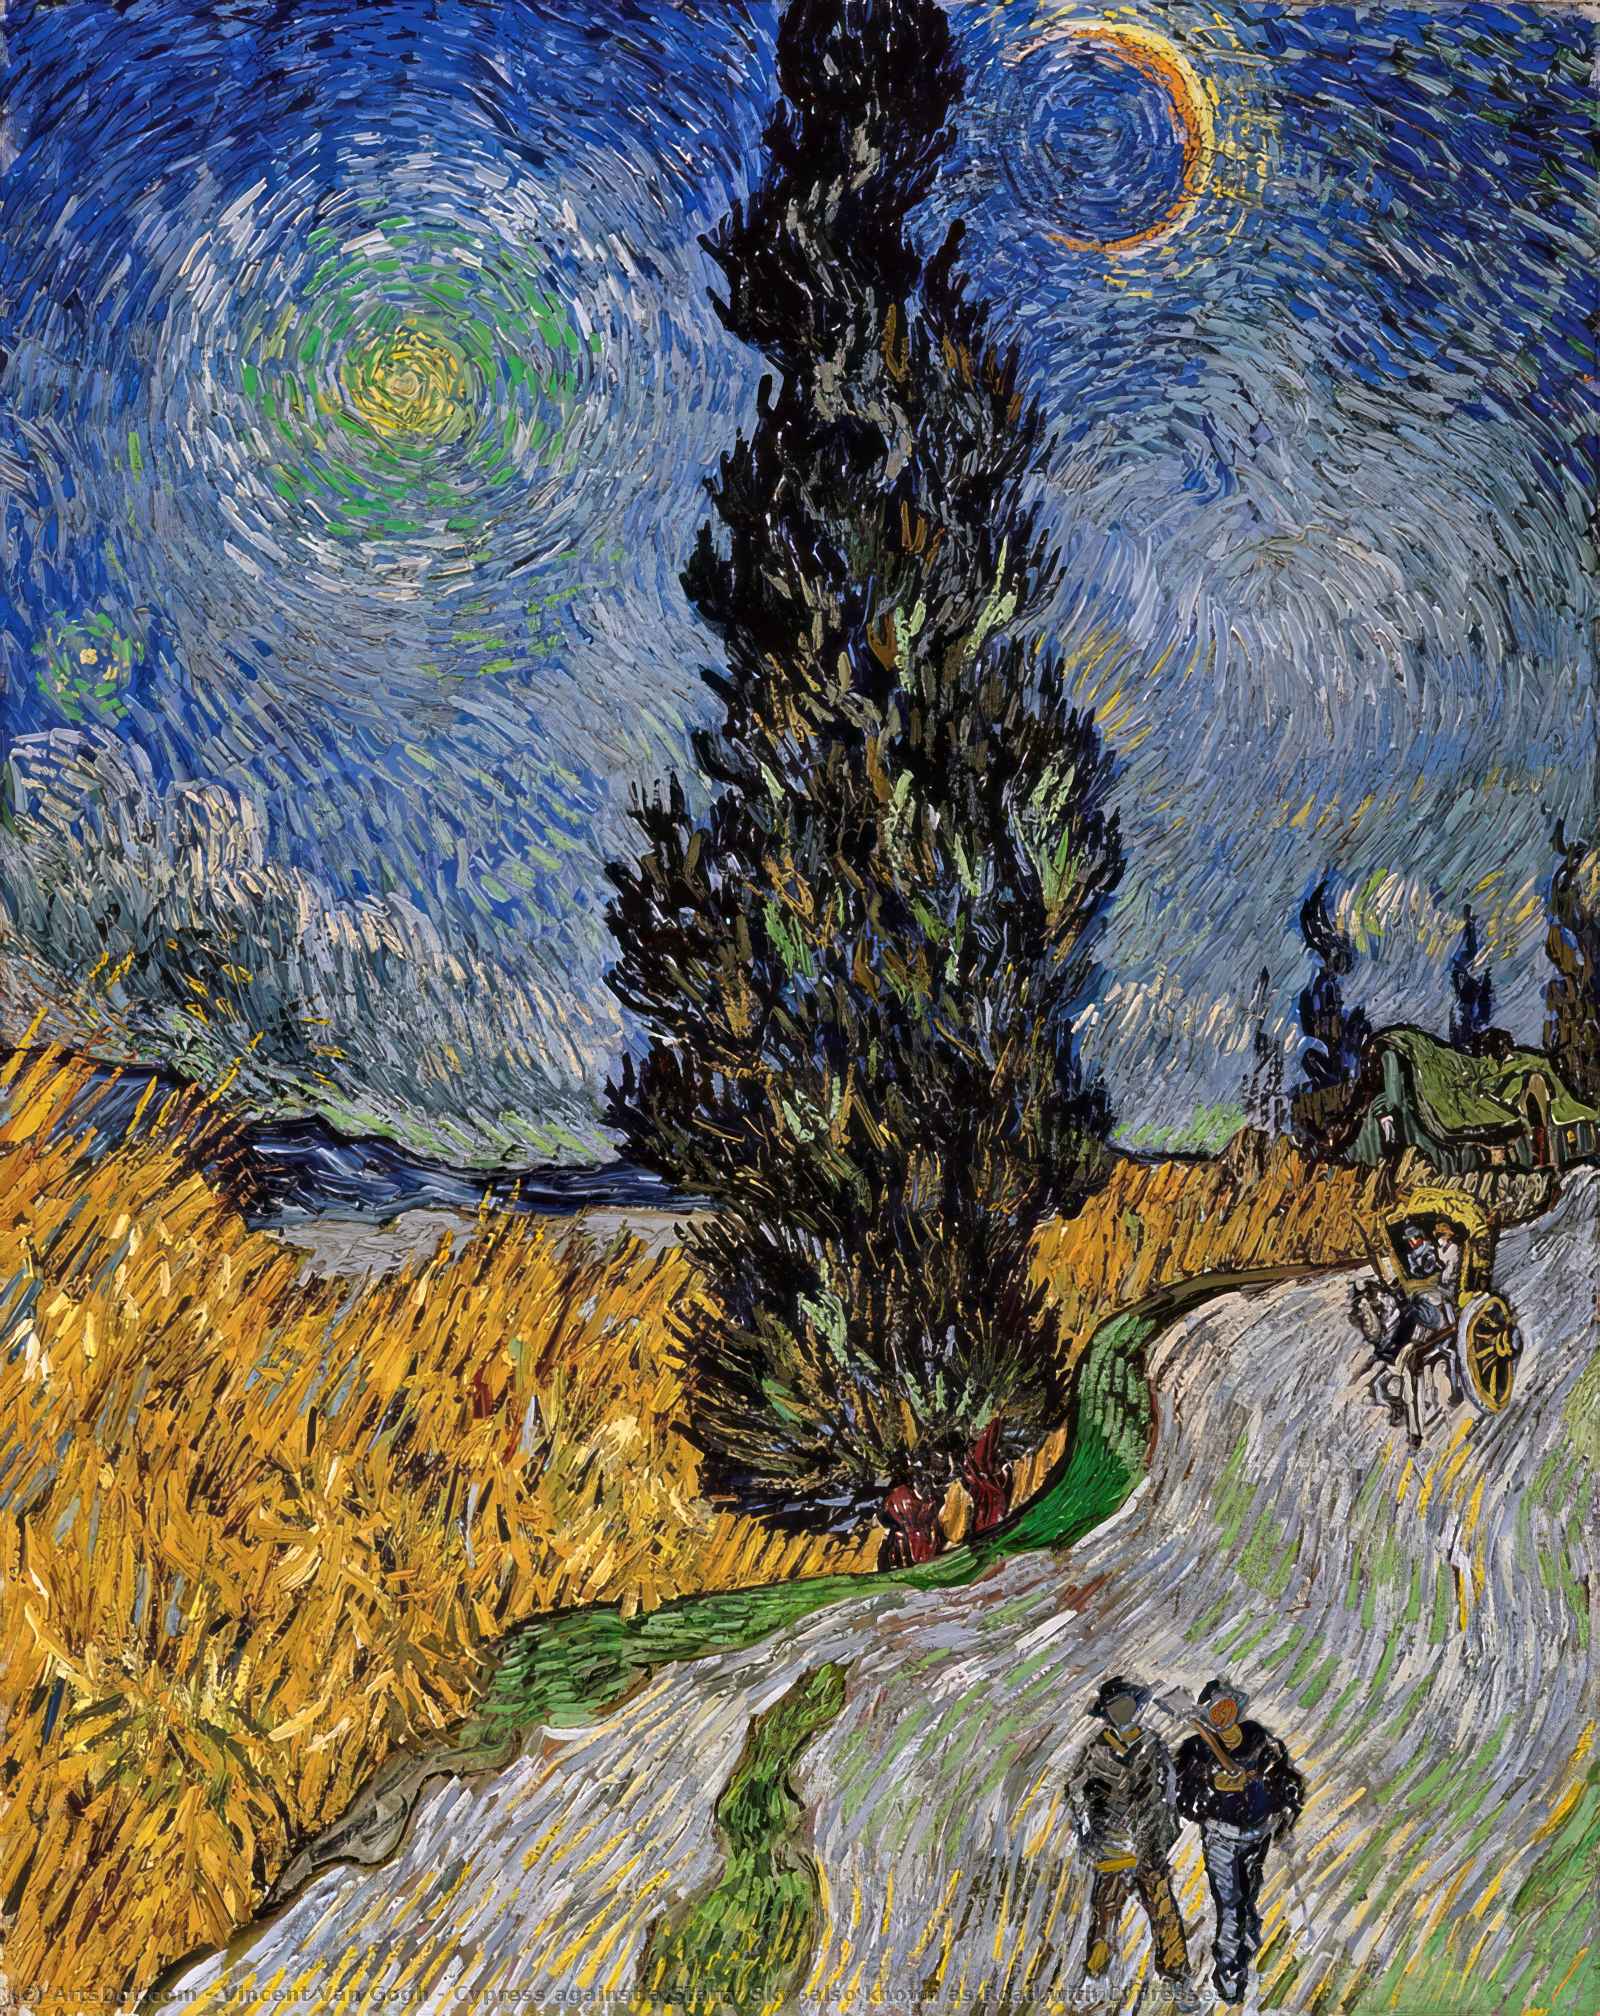 Acheter Reproductions D'art De Musée Cyprès contre un ciel étoilé (également connu sous le nom de Route avec Cyprès), 1890 de Vincent Van Gogh (1853-1890, Netherlands) | ArtsDot.com